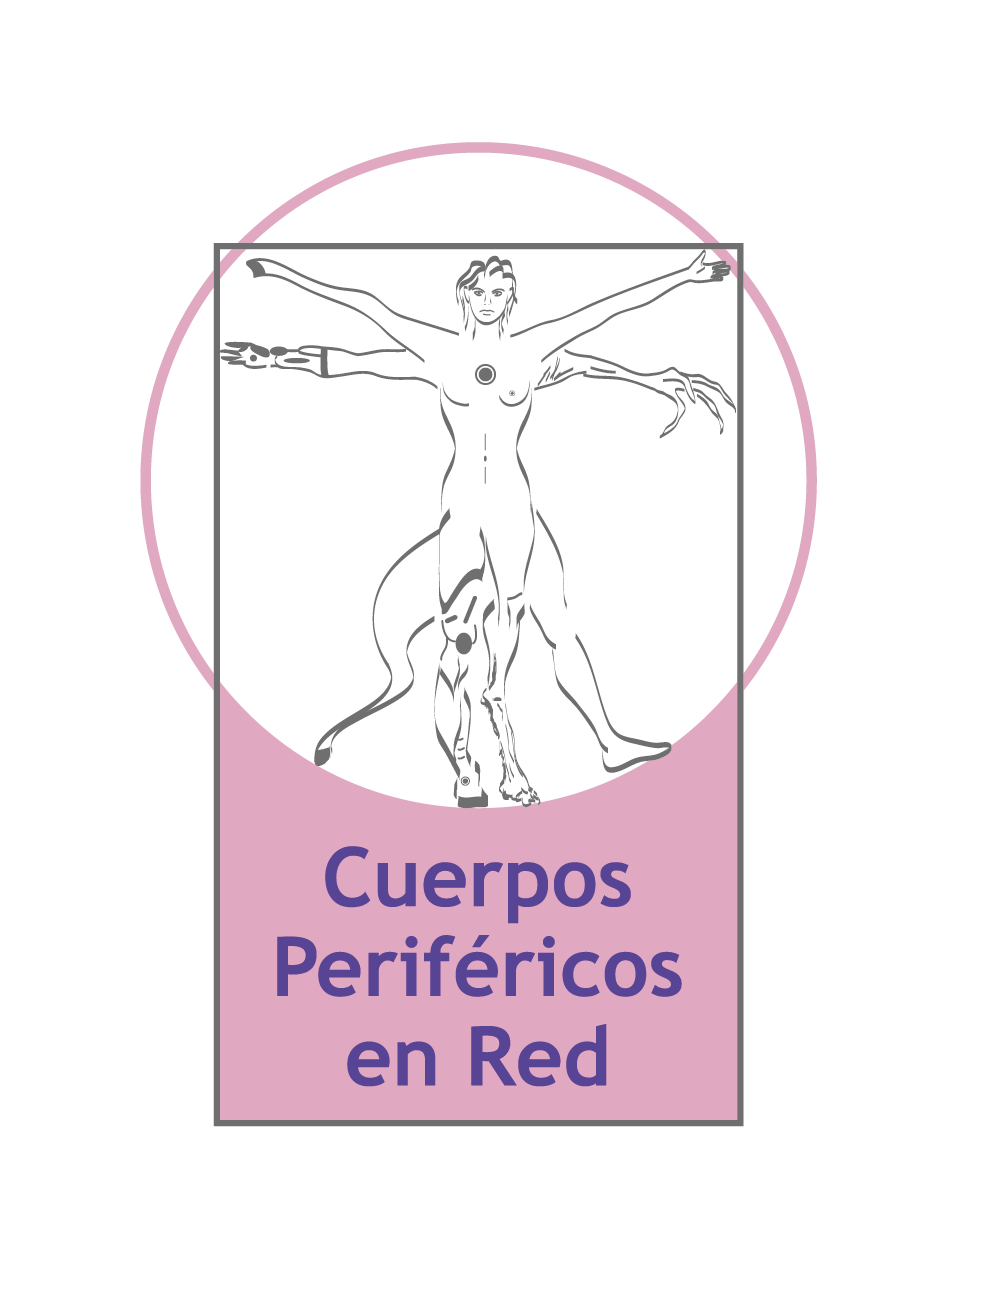 Cuerpos Periféricos en Red